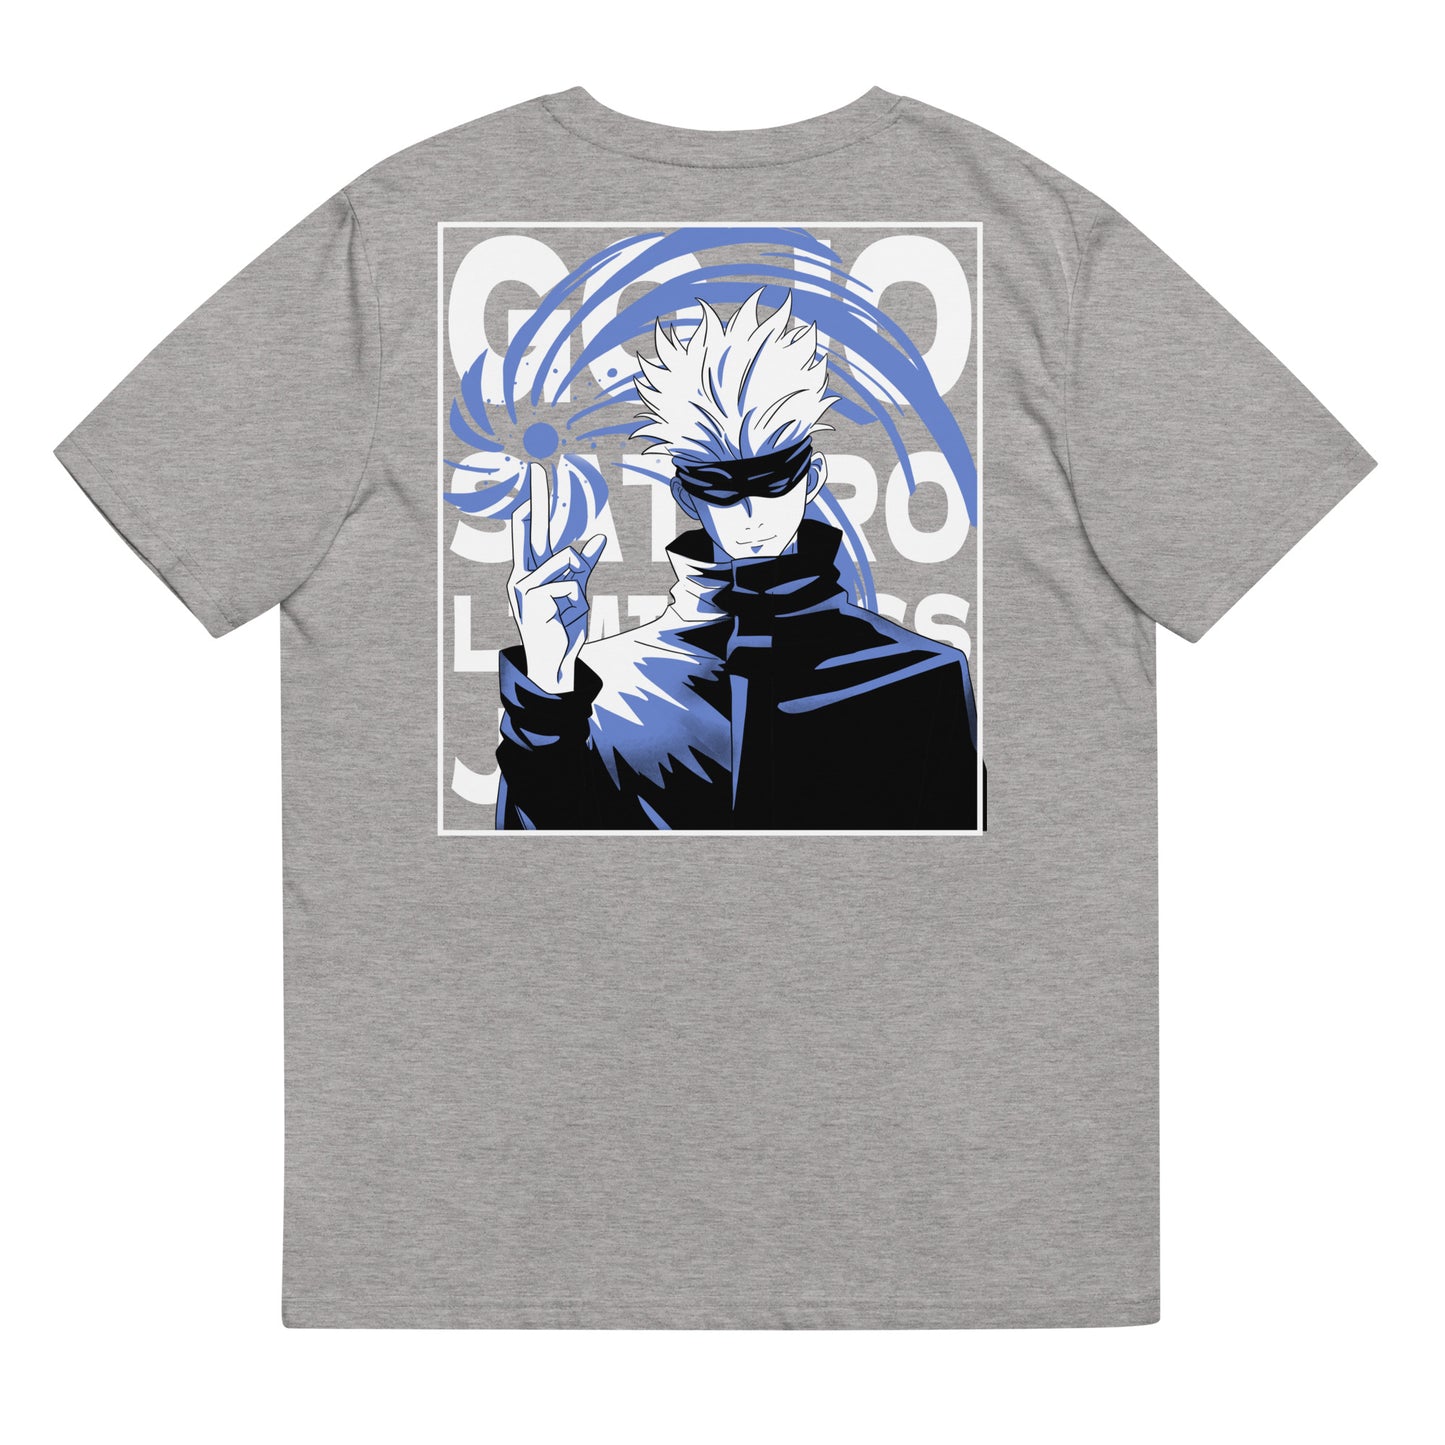 Gojo Limitless T-Shirt, Jujutsu Kaisen Anime